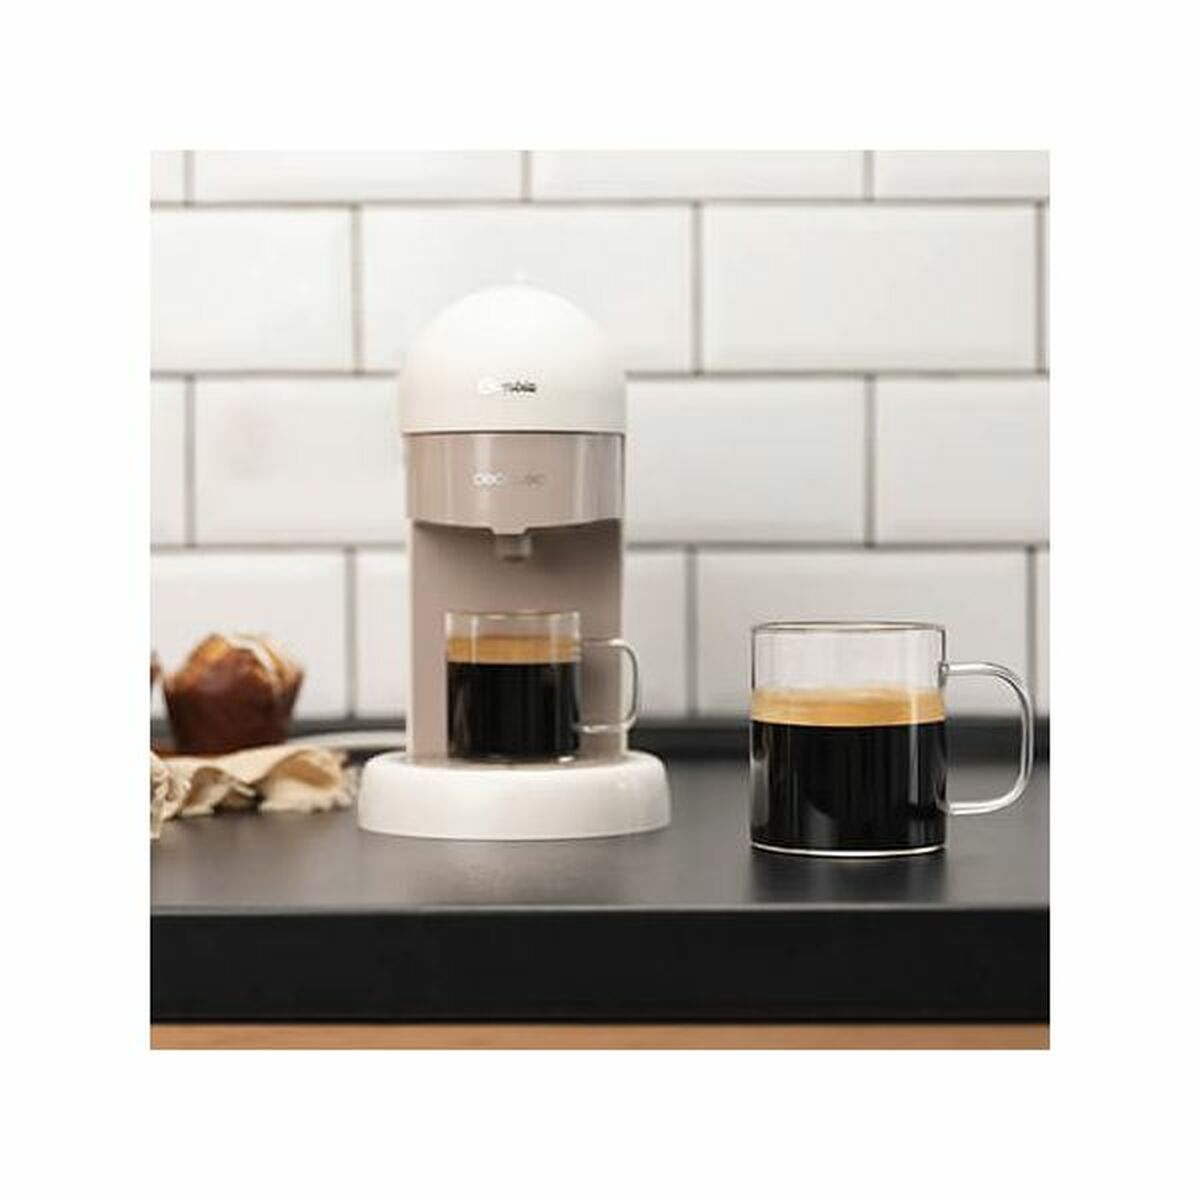 Express Coffee Machine Cecotec Cumbia Capricciosa 1100 W